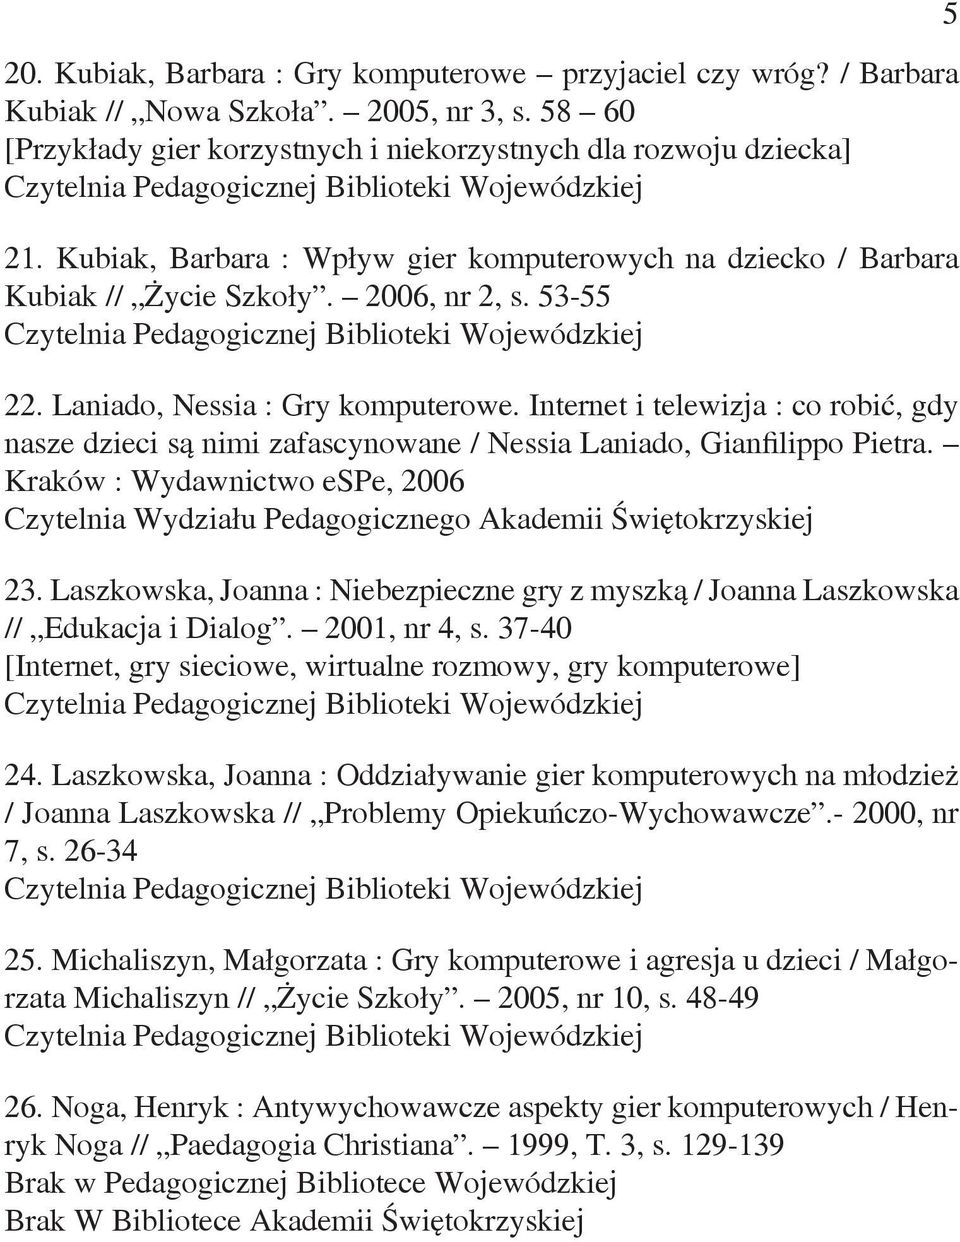 Internet i telewizja : co robić, gdy nasze dzieci są nimi zafascynowane / Nessia Laniado, Gianfilippo Pietra. Kraków : Wydawnictwo espe, 2006 23.